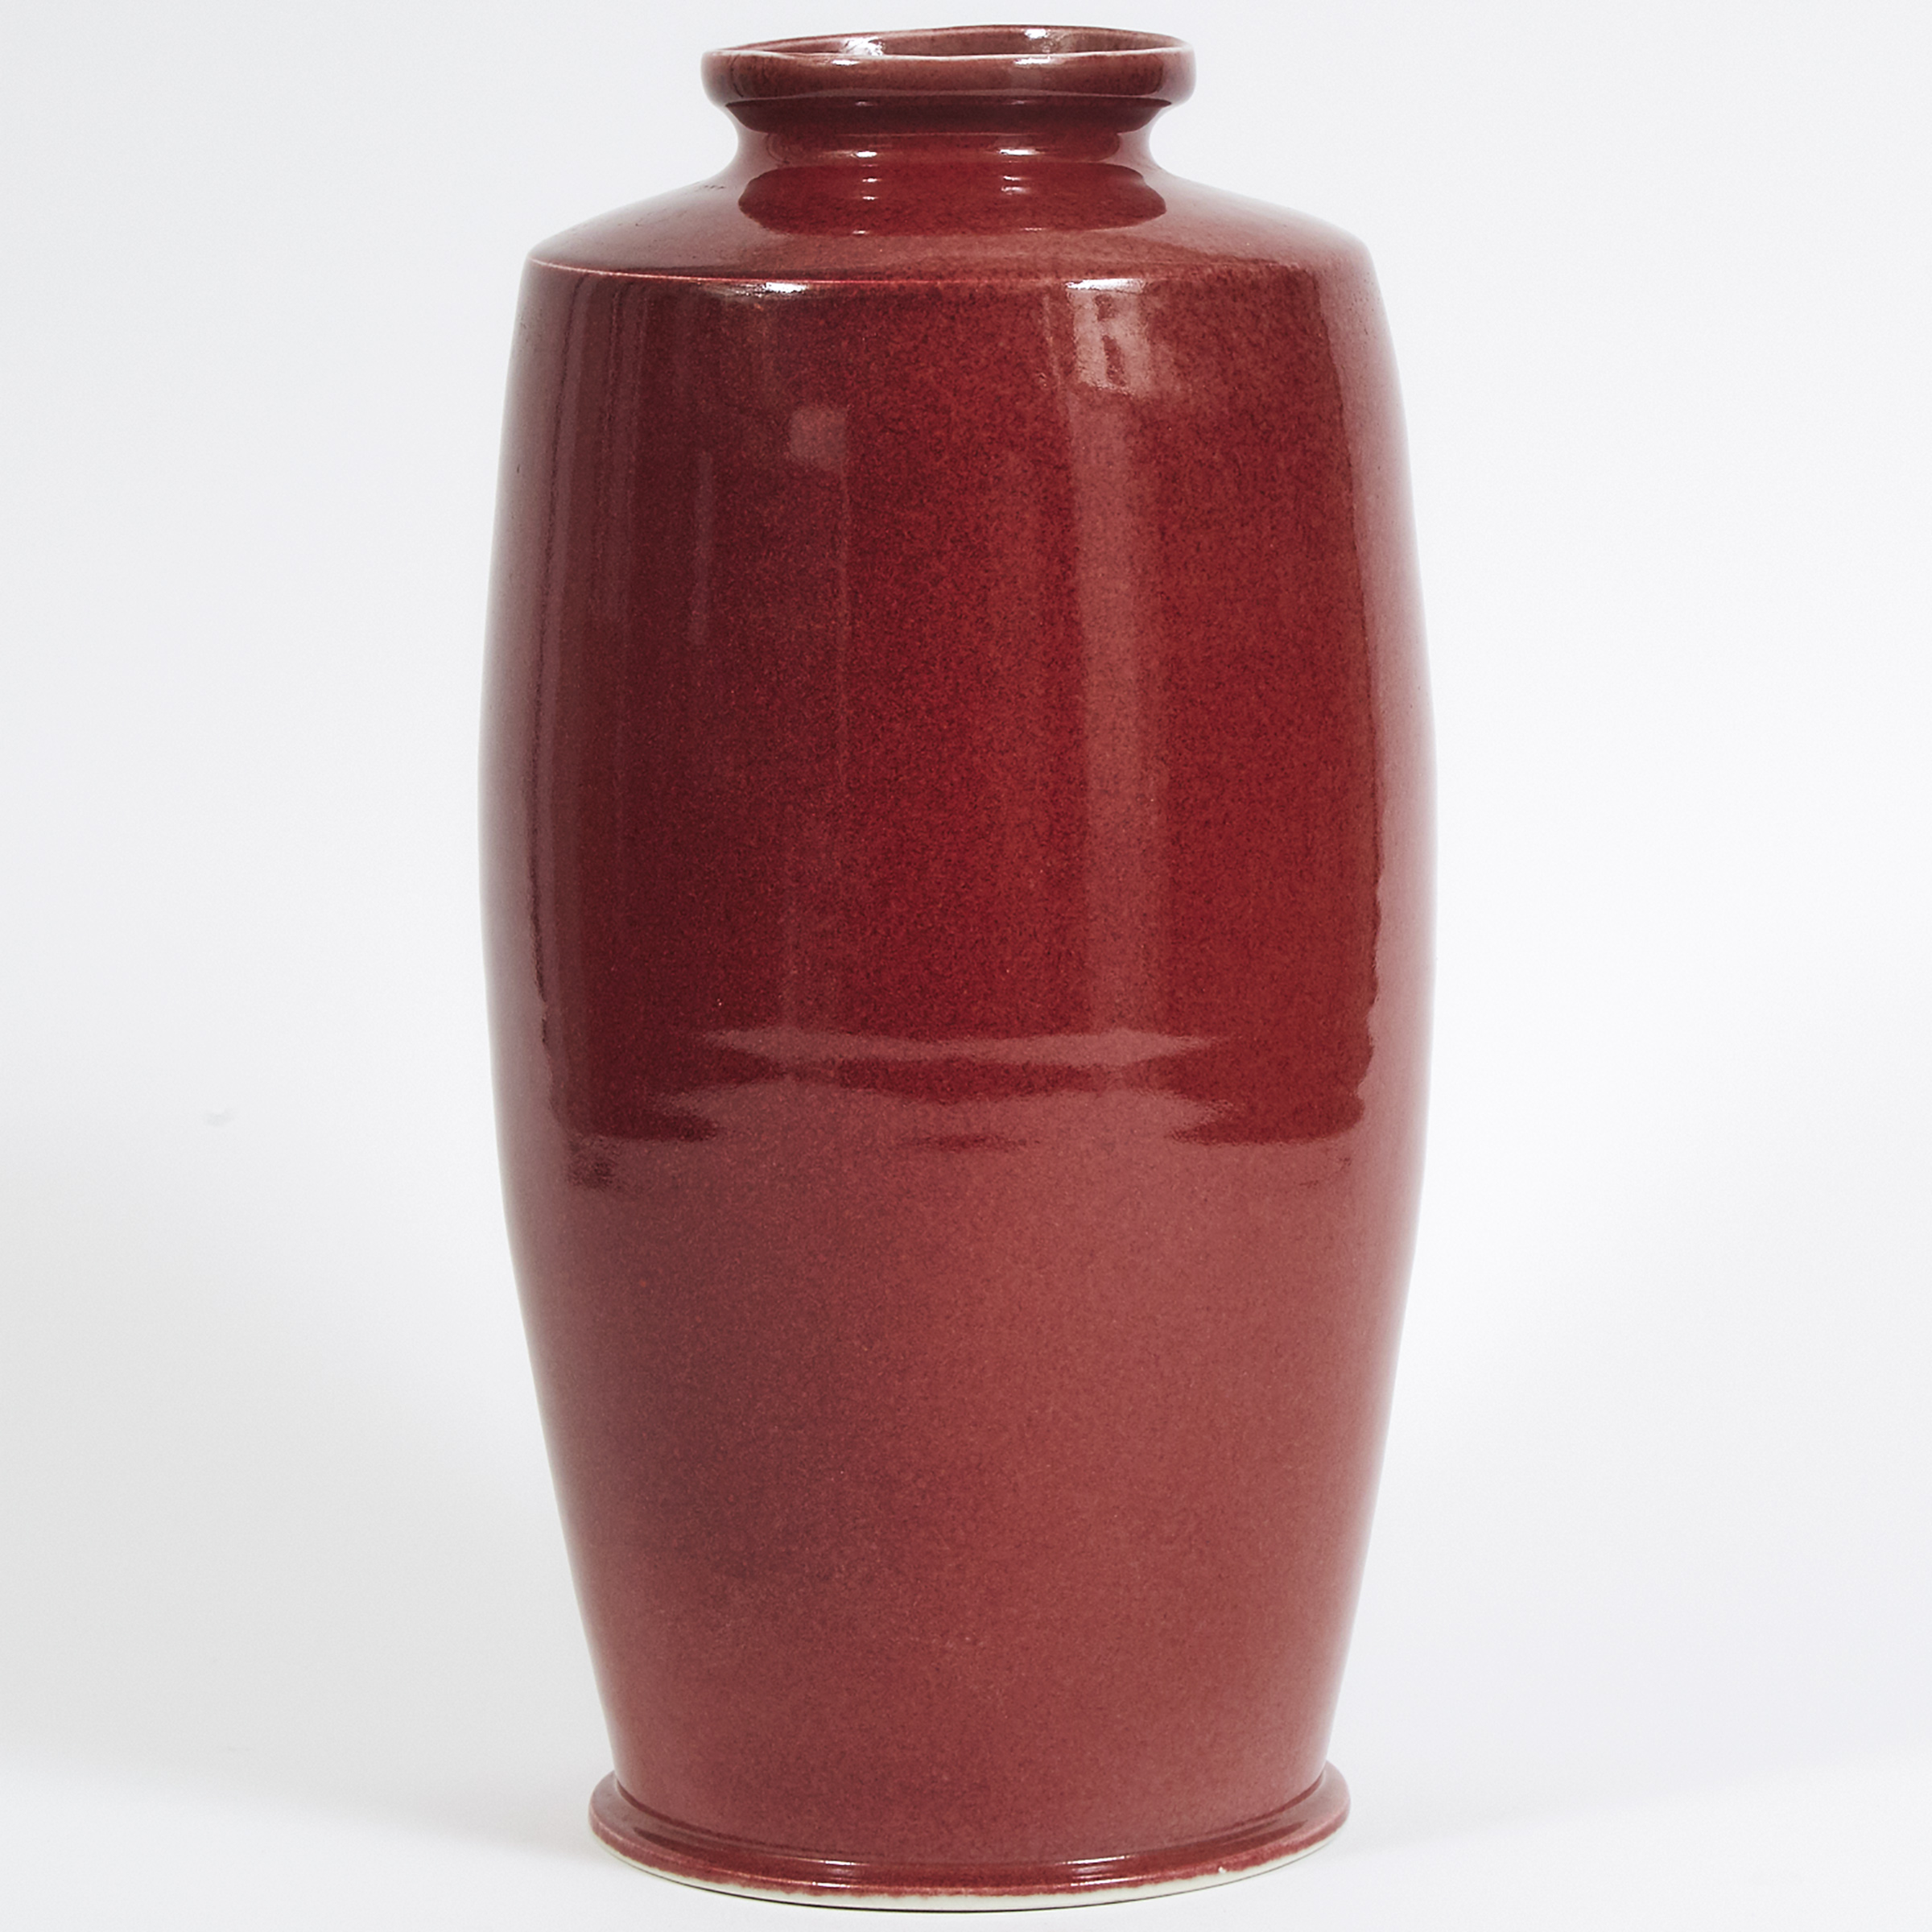 Harlan House (Canadian, b.1943), Large Oxblood Glazed Vase, 1987